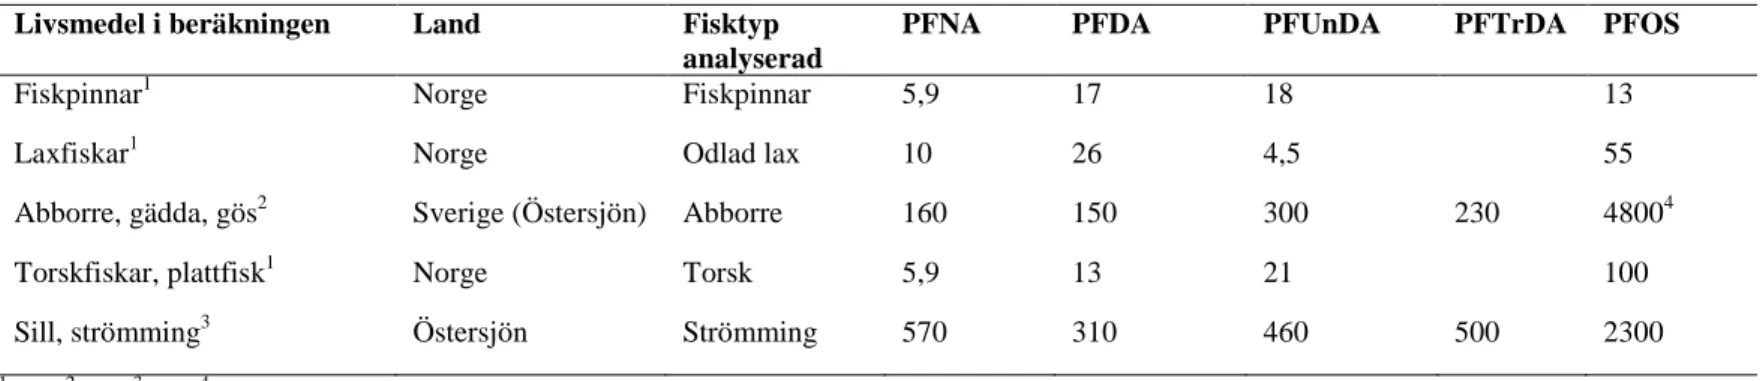 Tabell 6. Halter av enskilda PFAA (pg/g) uppmätta i fisk som använts i intagsberäkningarna gällande bakgrundsintag